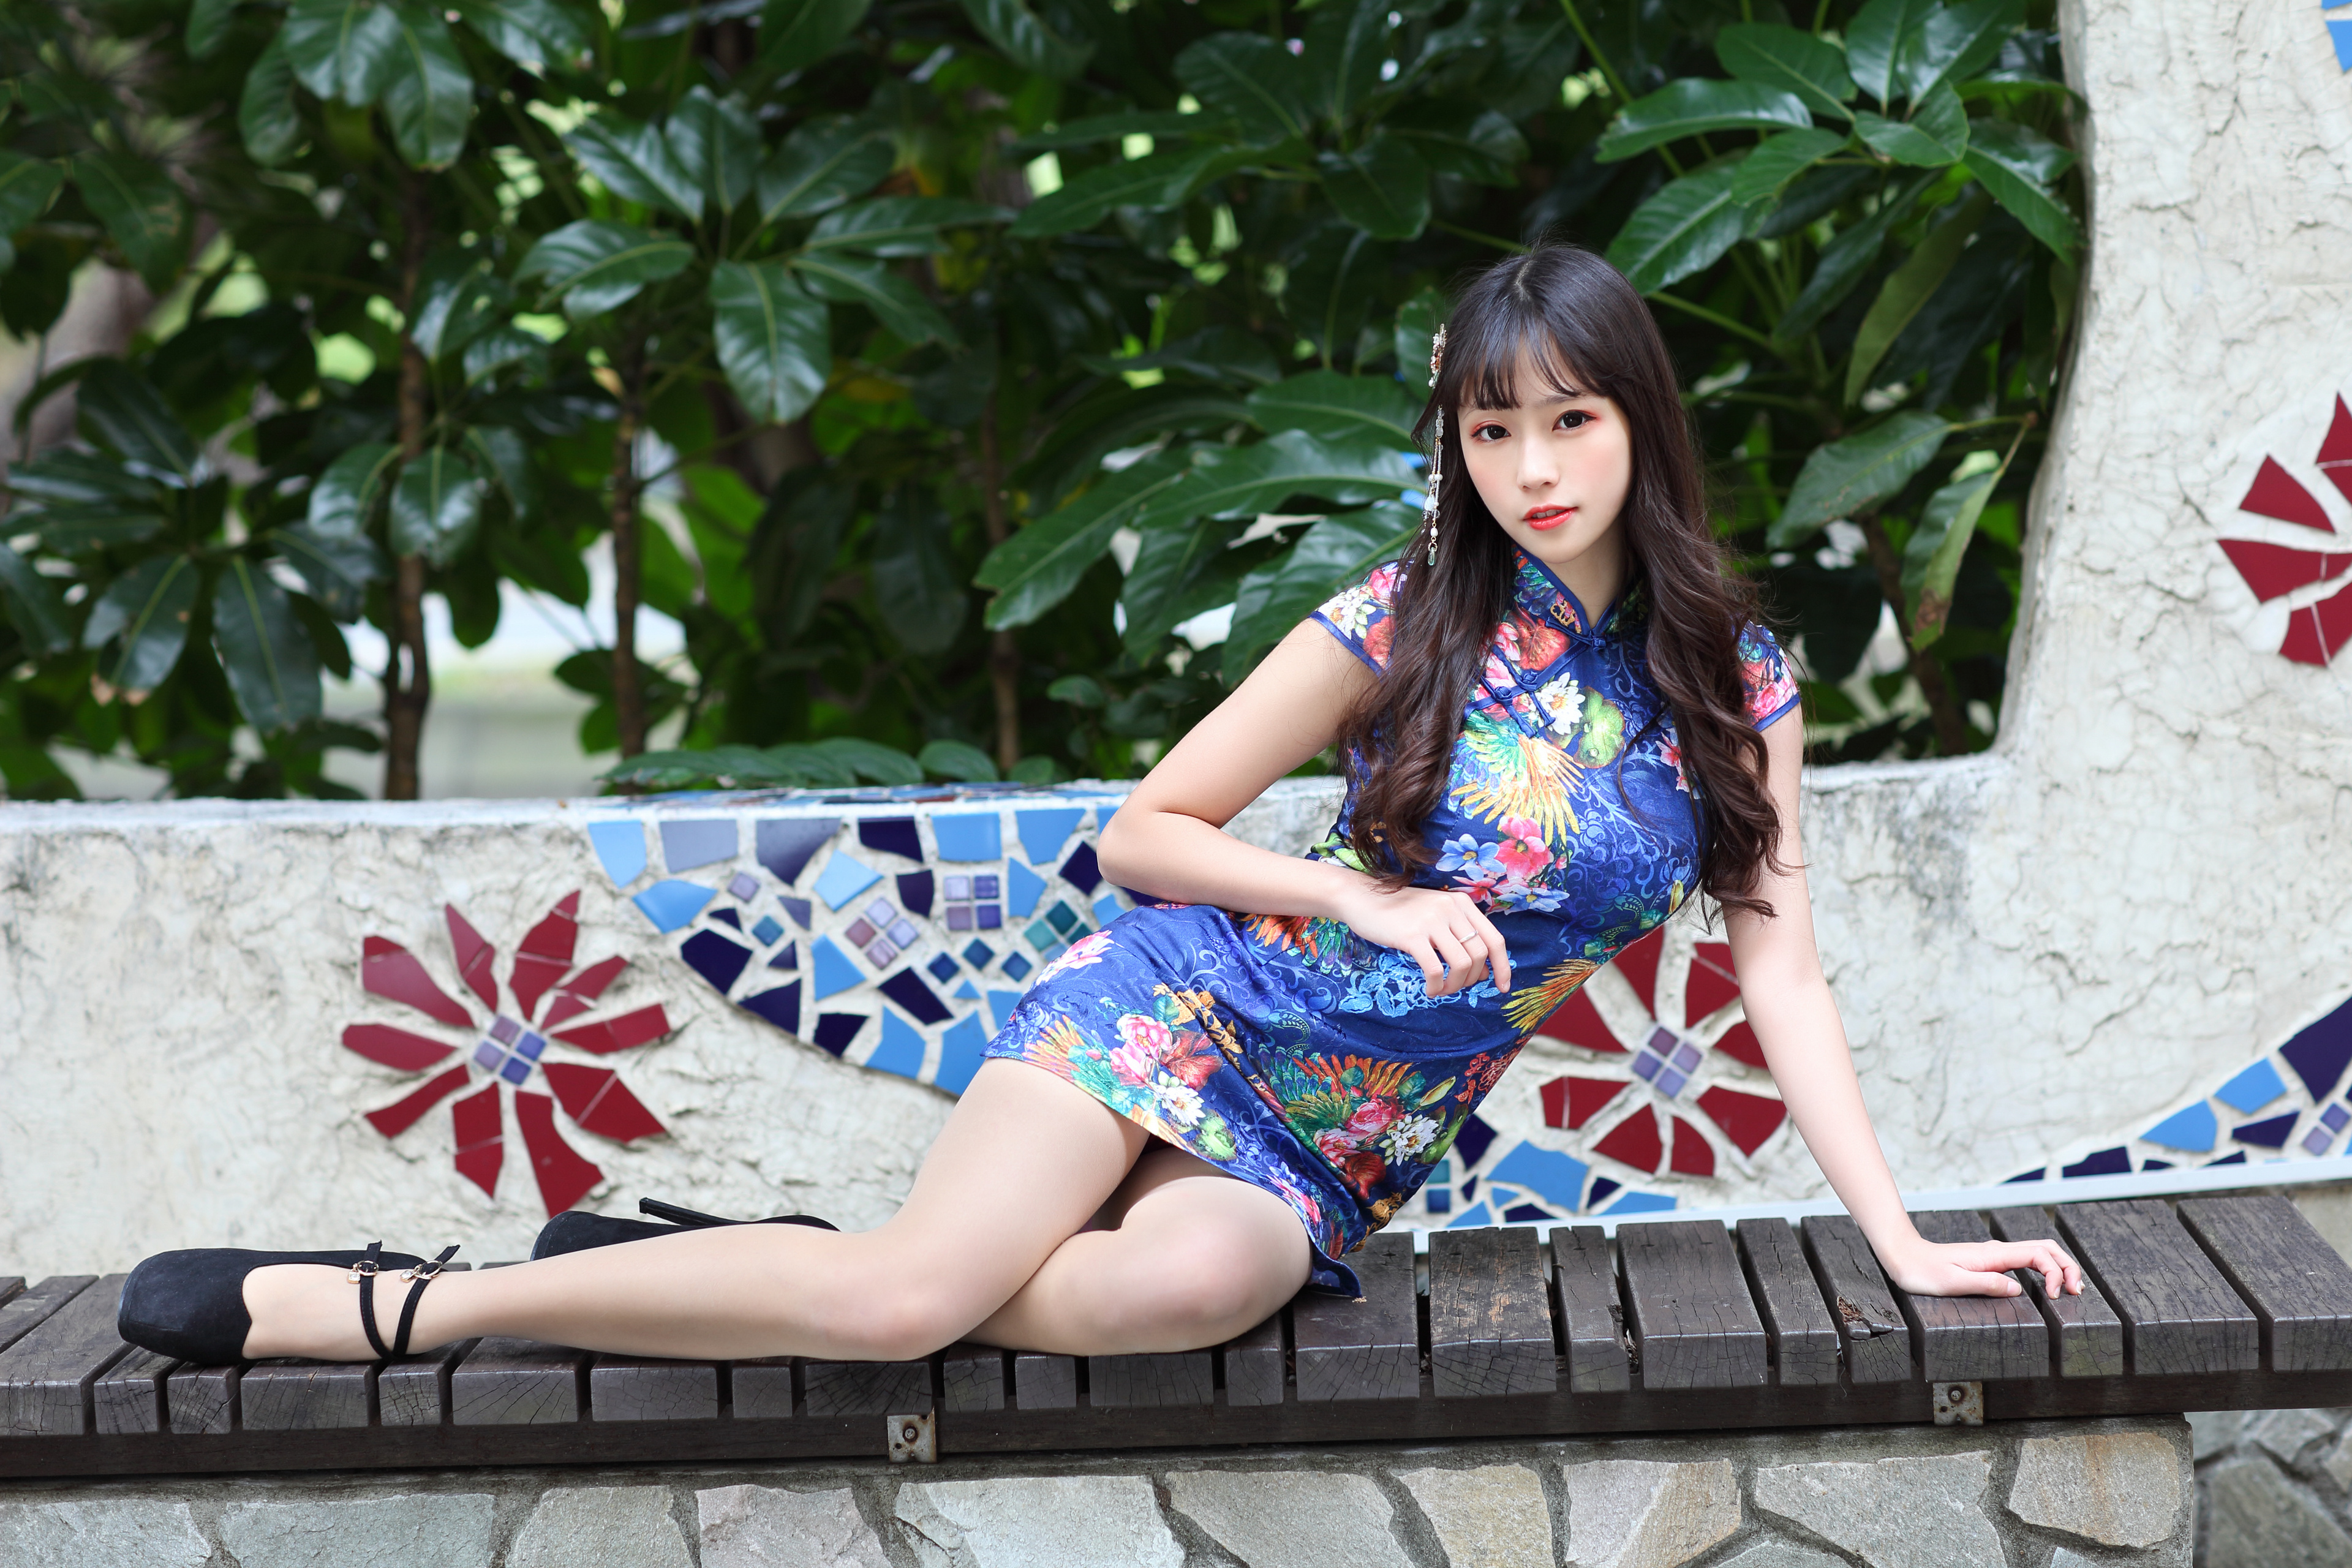 Asian Model Women Long Hair Dark Hair Lying On Side Bench 3840x2560